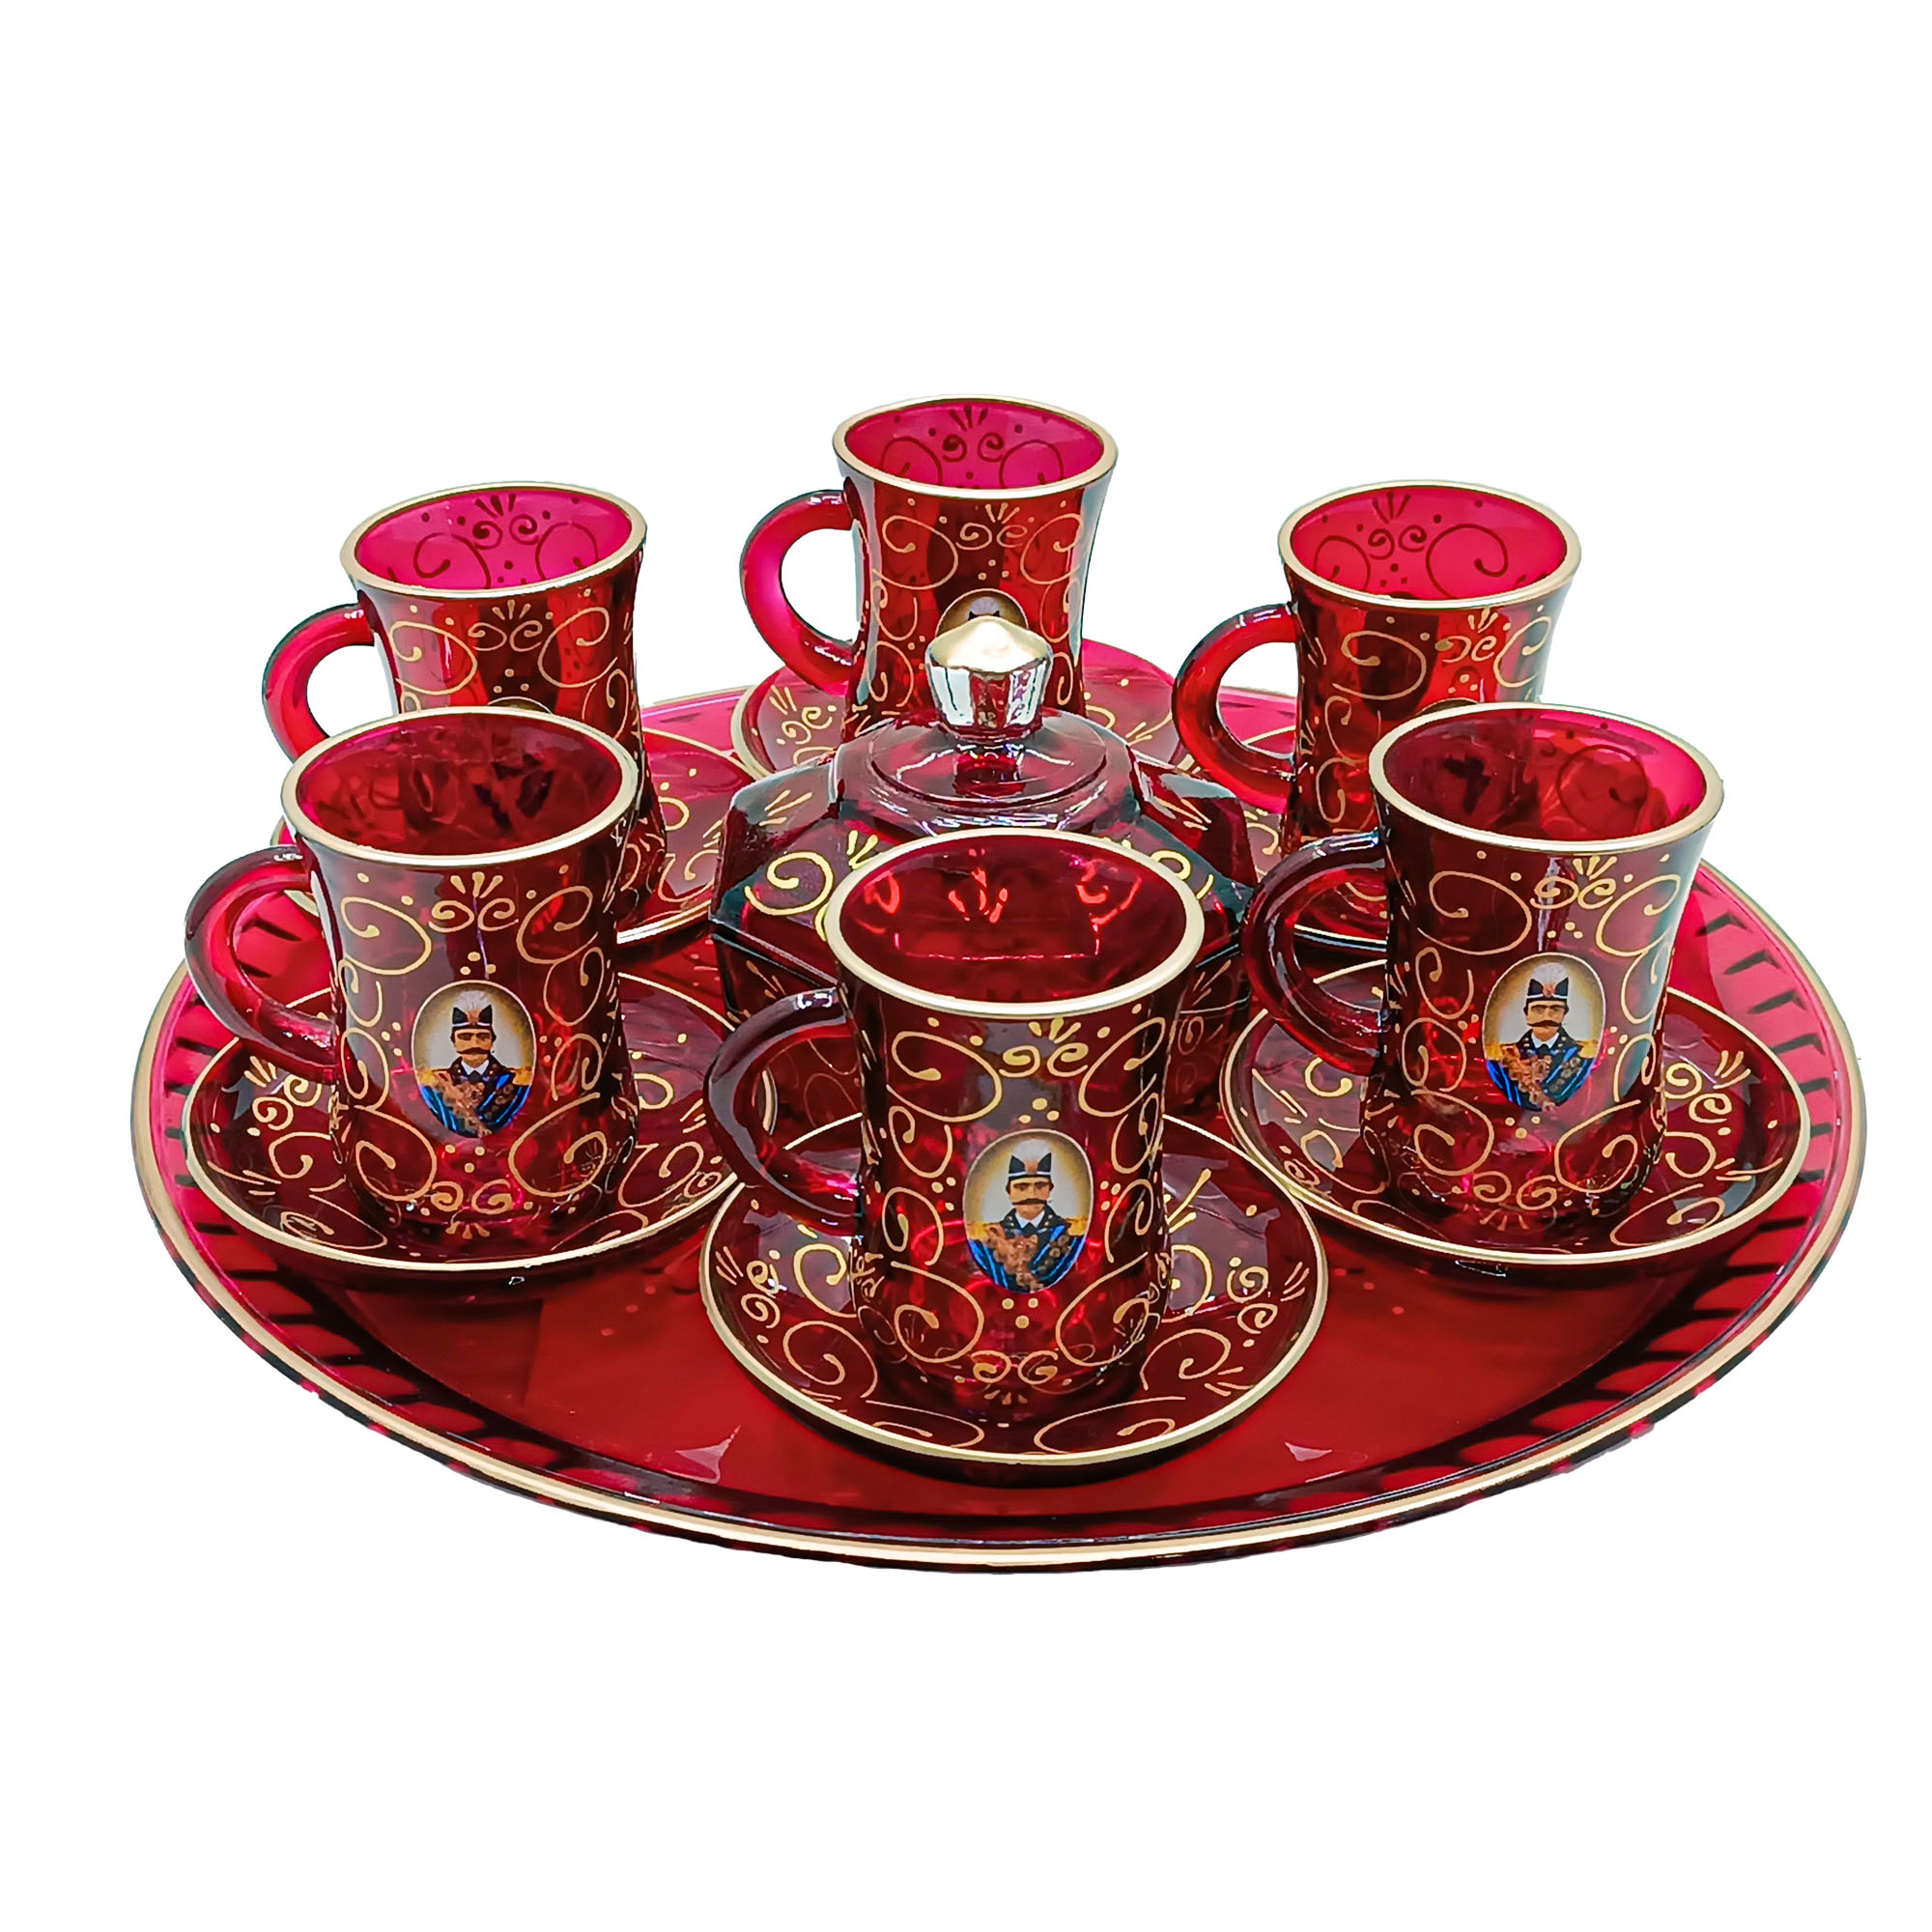 سرویس چای خوری 15 پارچه مدل شاه عباسی